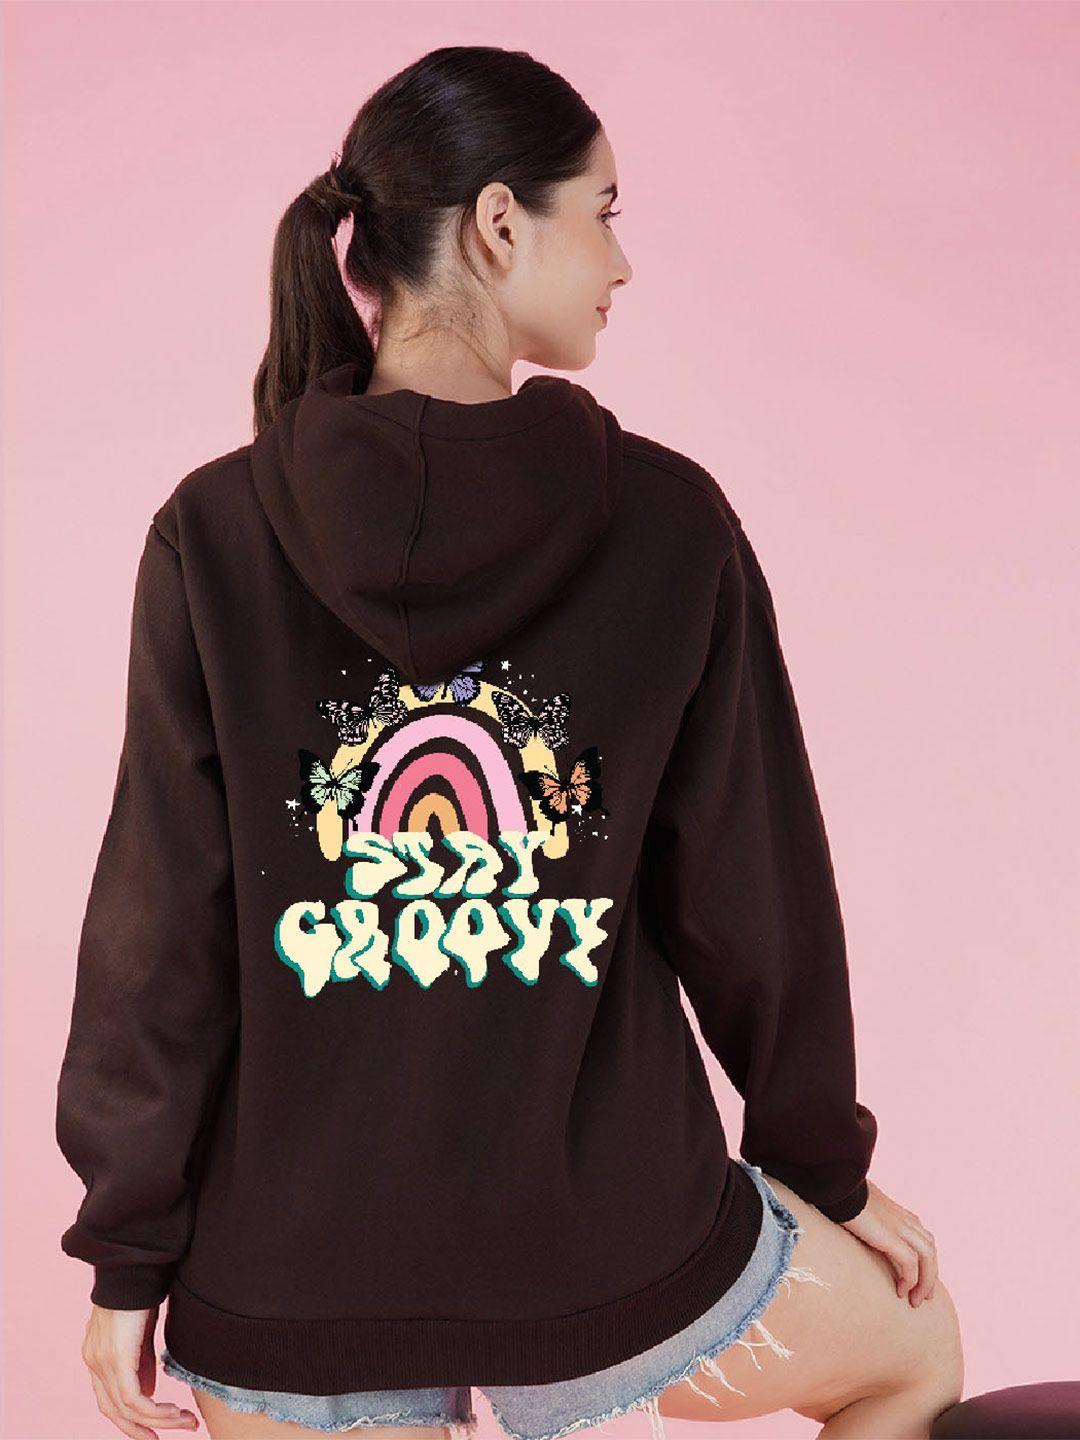 nusyl-graphic-printed-hooded-fleece-oversized-sweatshirt